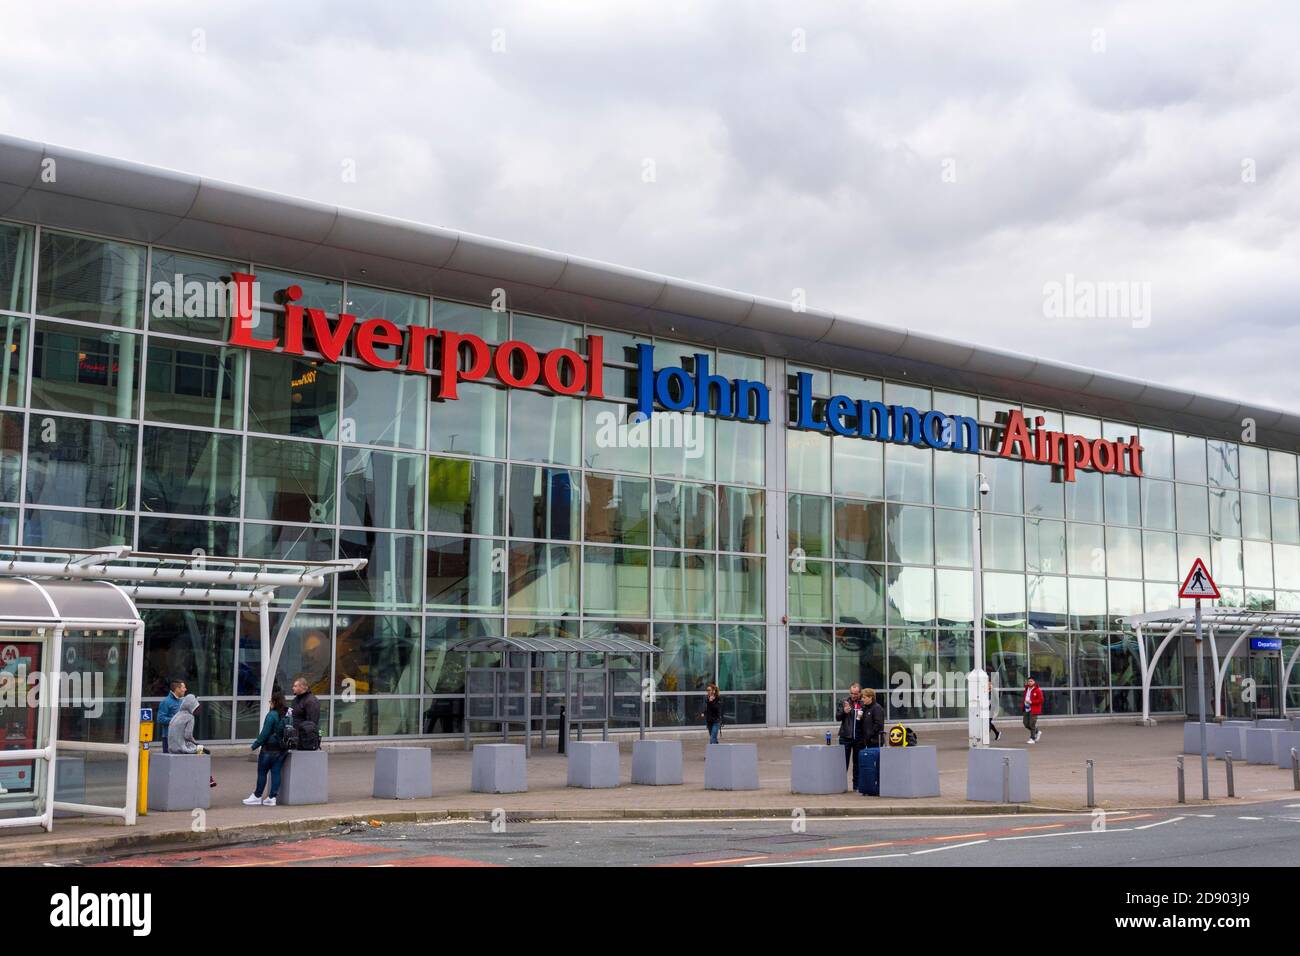 Aeroporto John Lennon di Liverpool. Facciata esterna dell'aeroporto internazionale. Foto Stock